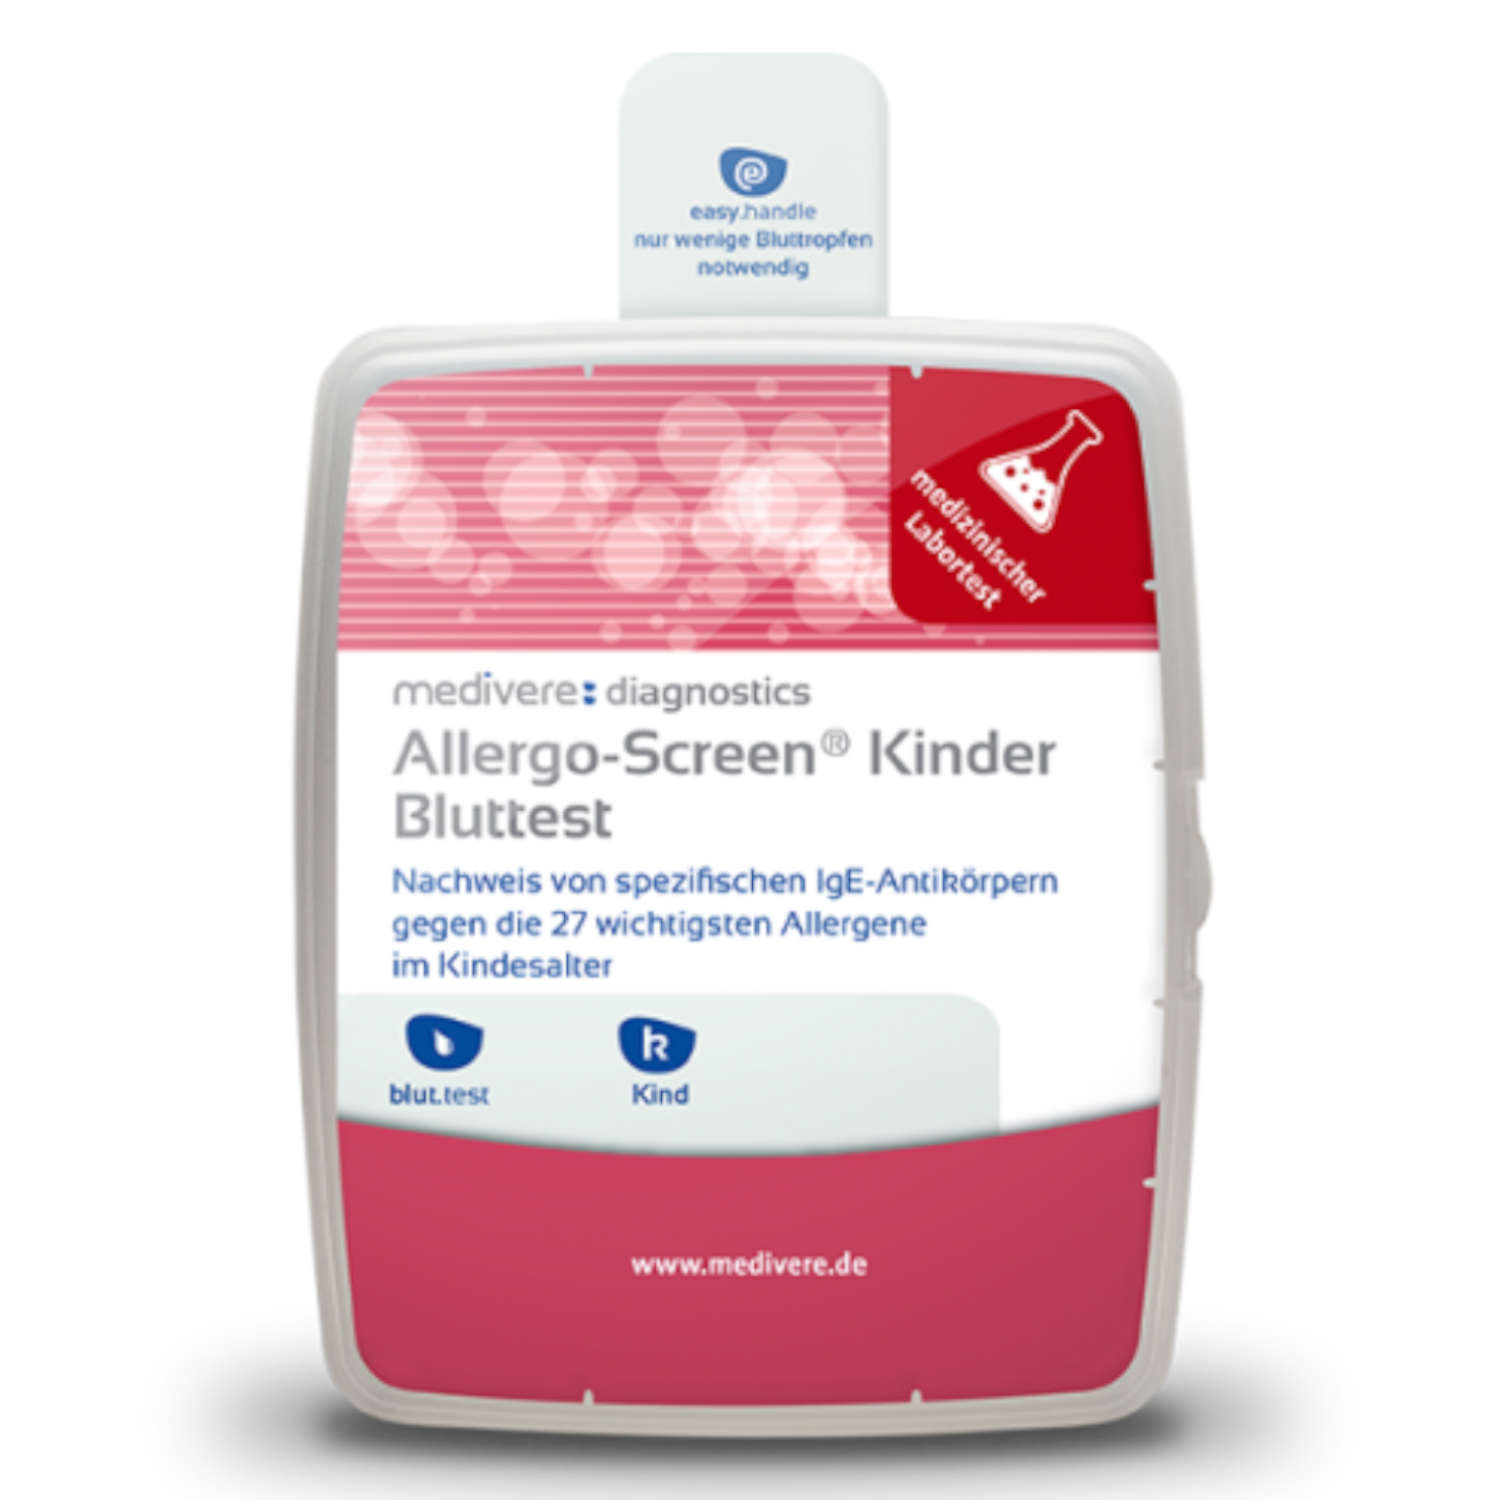 Allergo-Screen® Kinder Bluttest von medivere